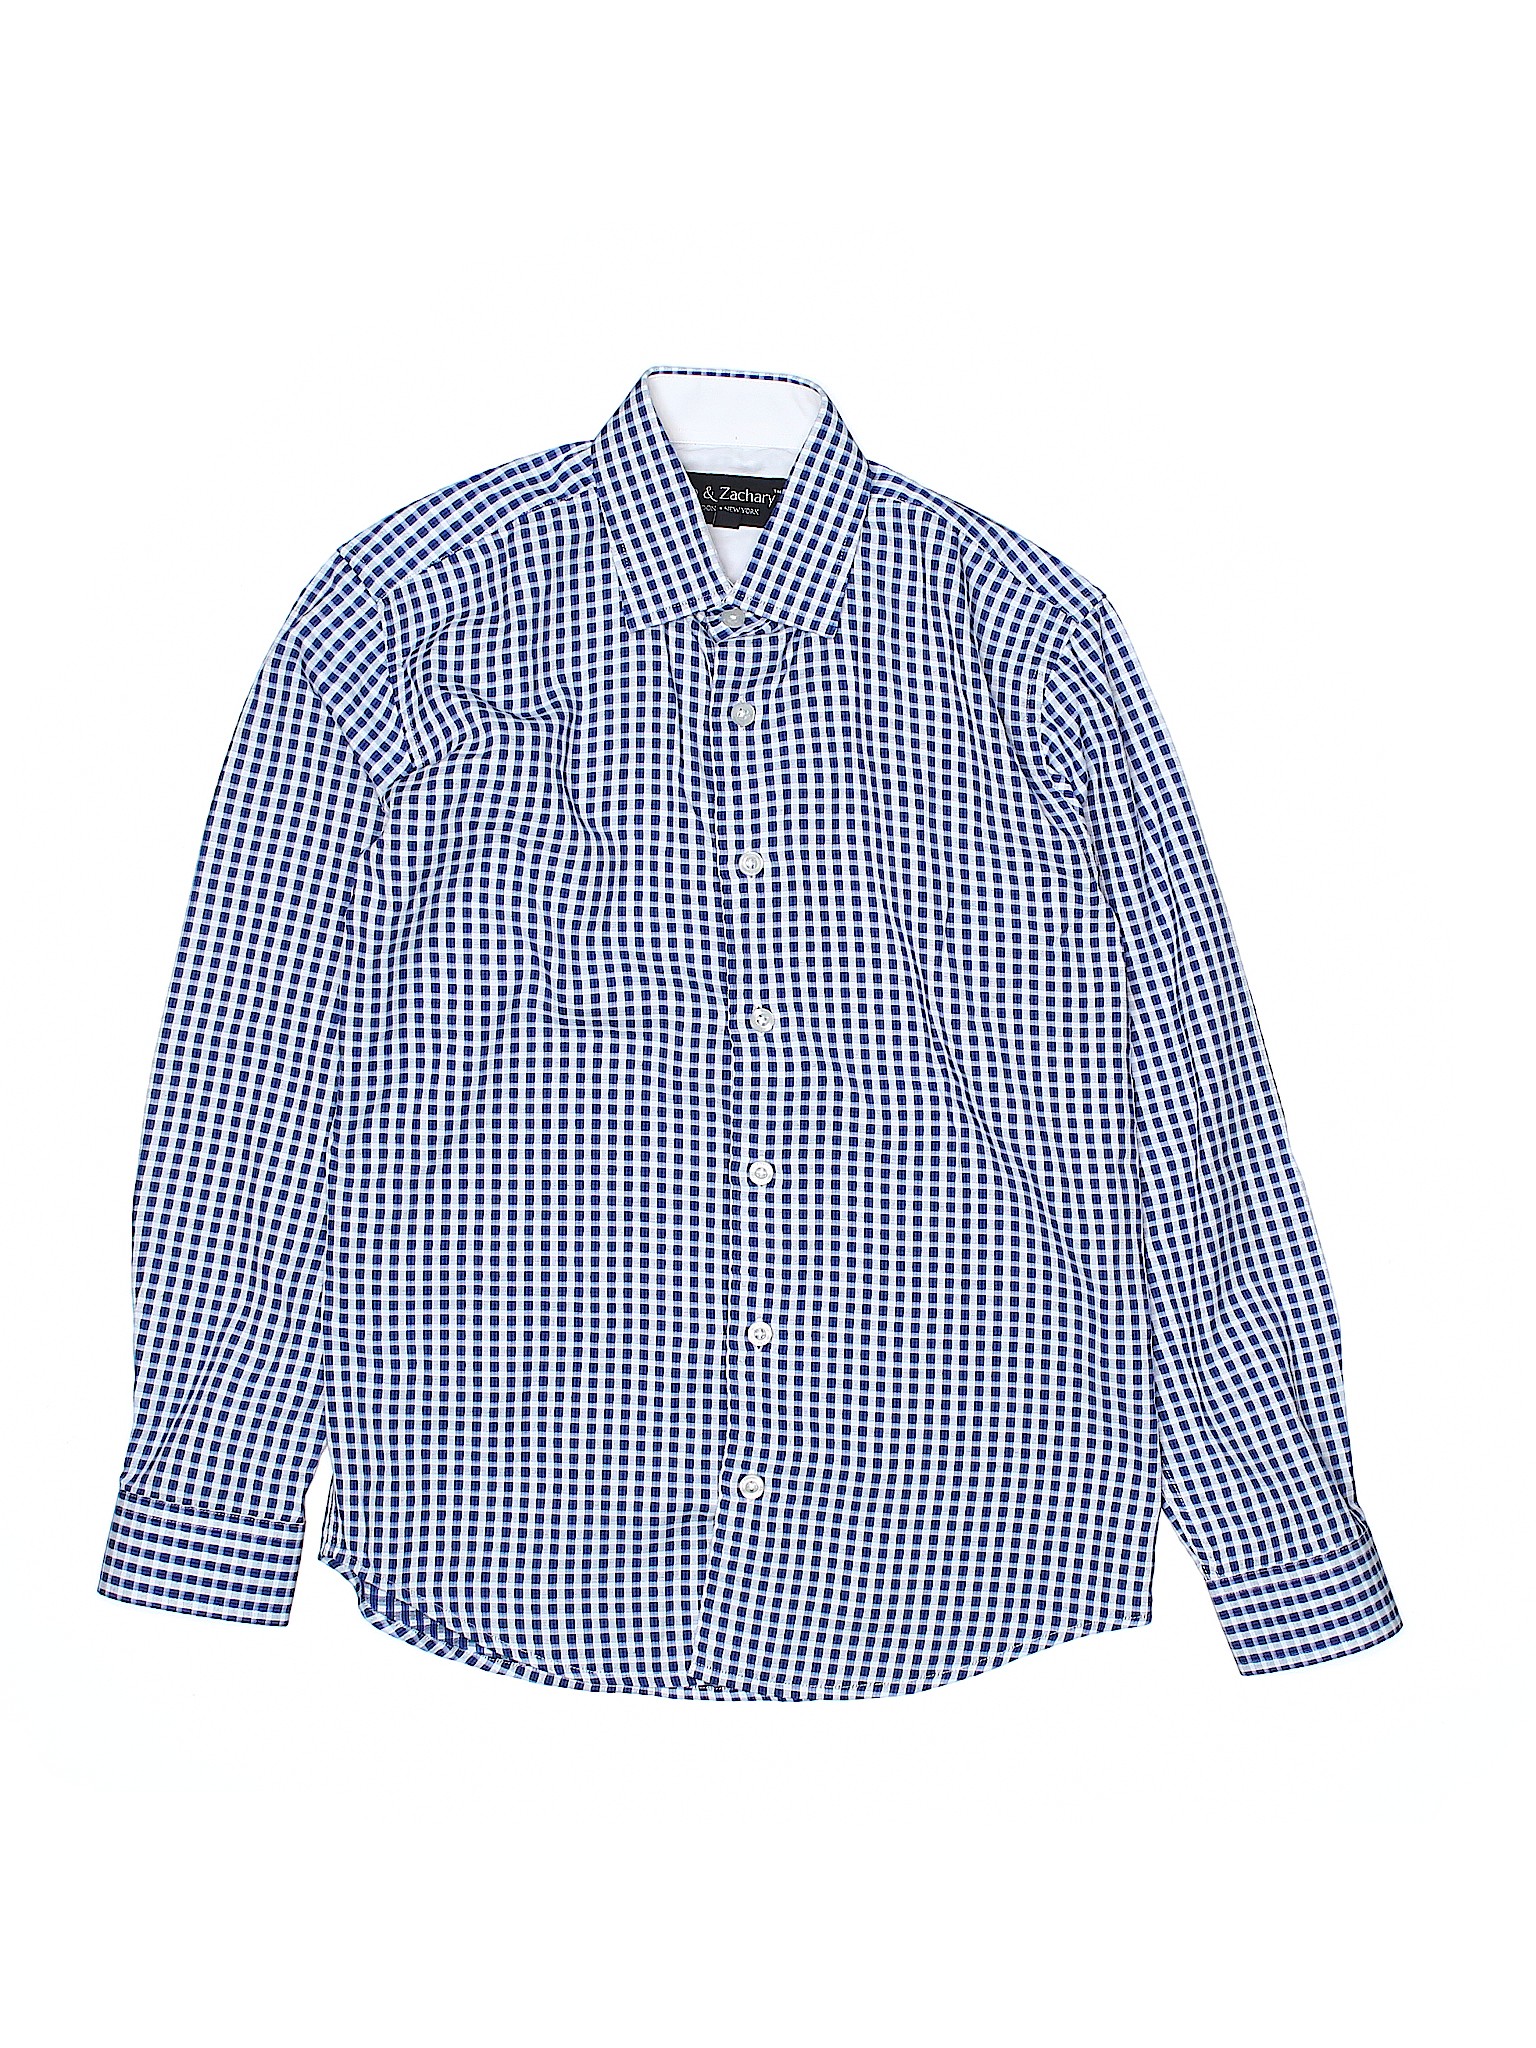 Assorted Brands Boys Blue Long Sleeve Button-Down Shirt 12 | eBay